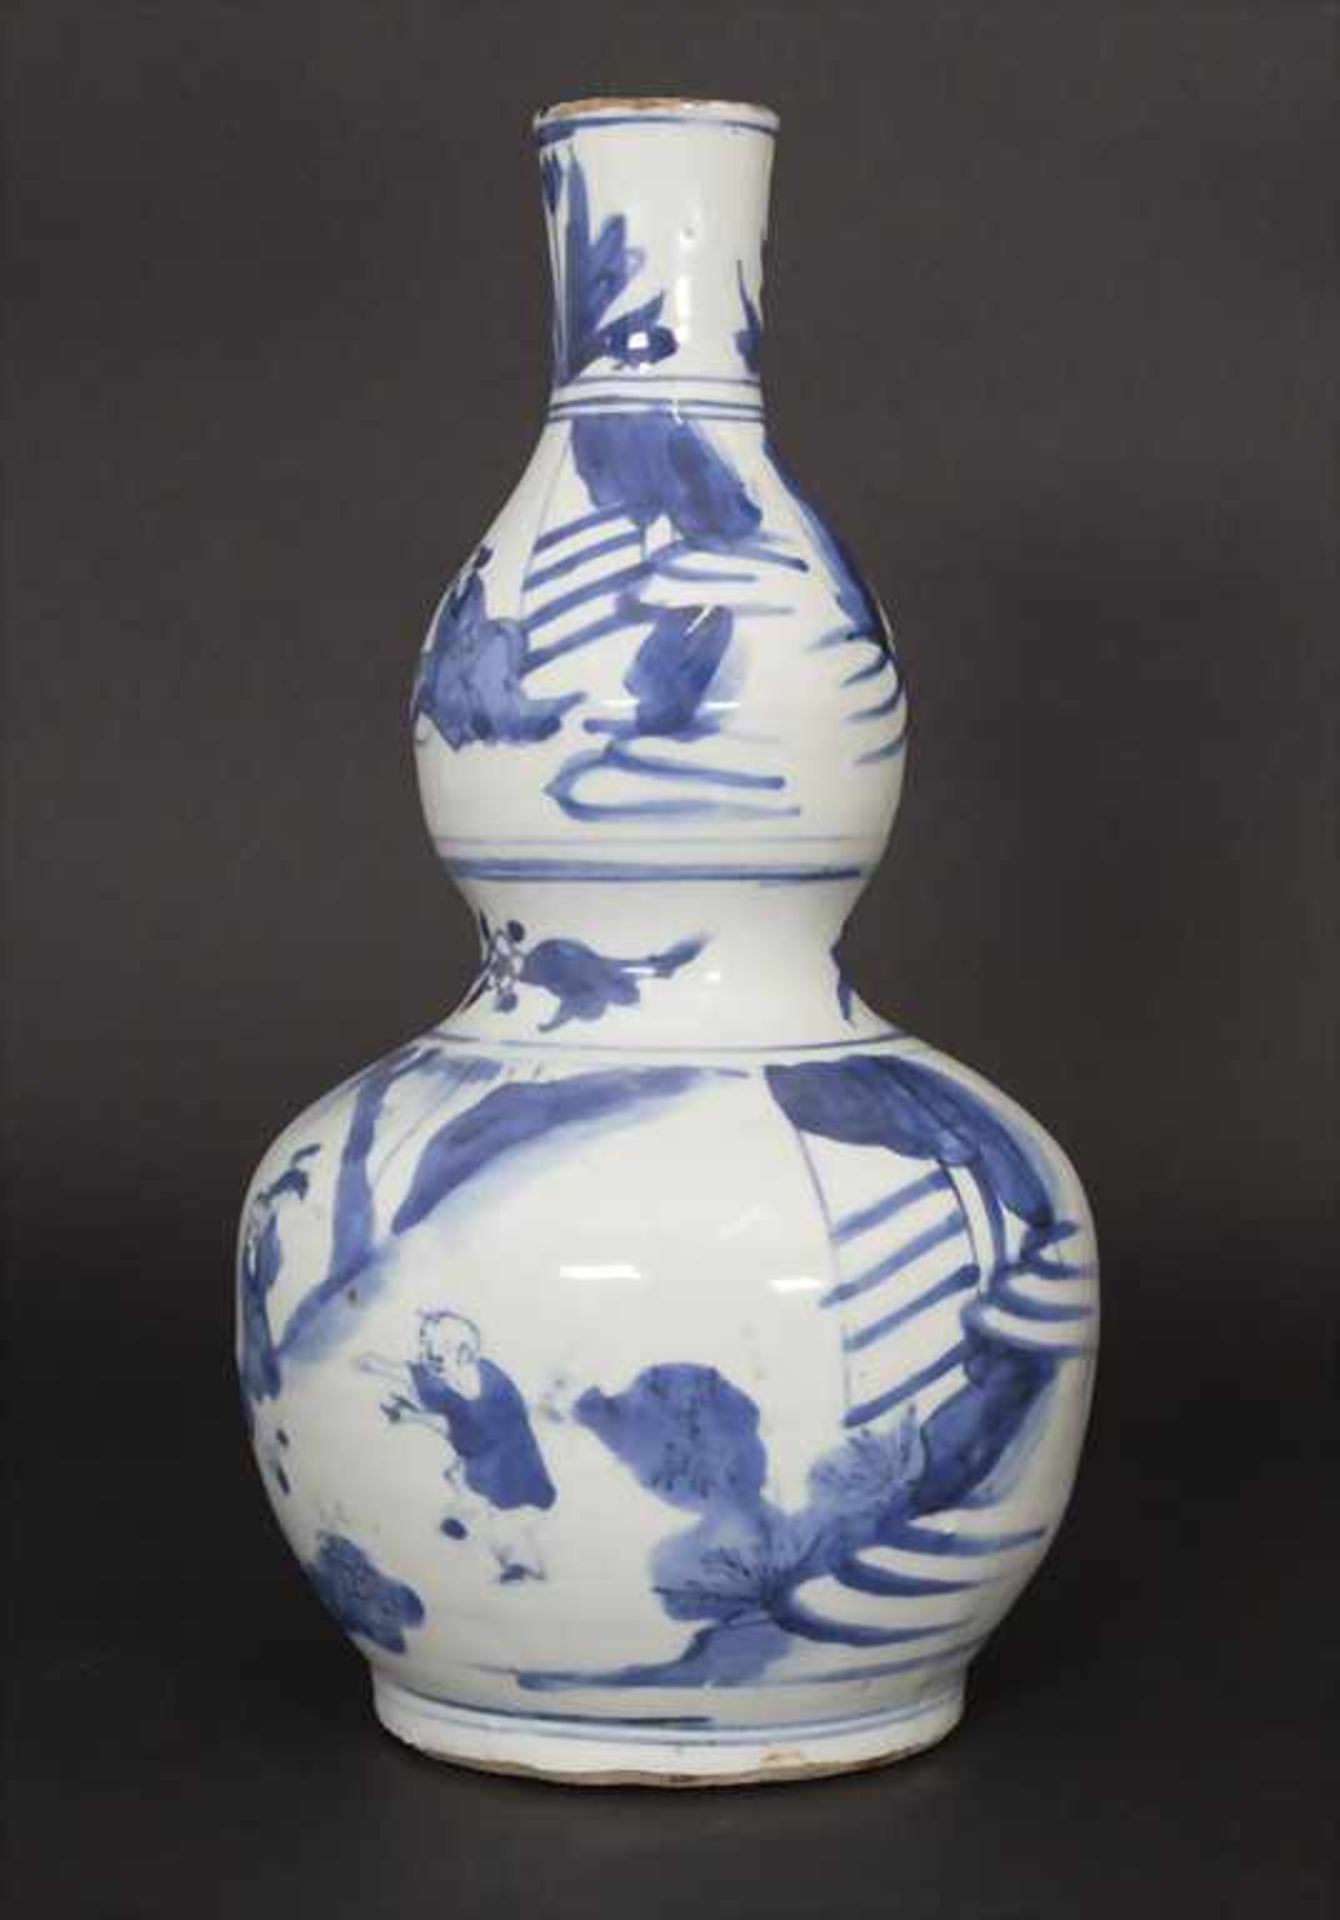 Kalebassenvase / A calabash vase, China, wohl 17. Jh.Material: Porzellan, blaue Unterglasurmalerei, - Bild 2 aus 17